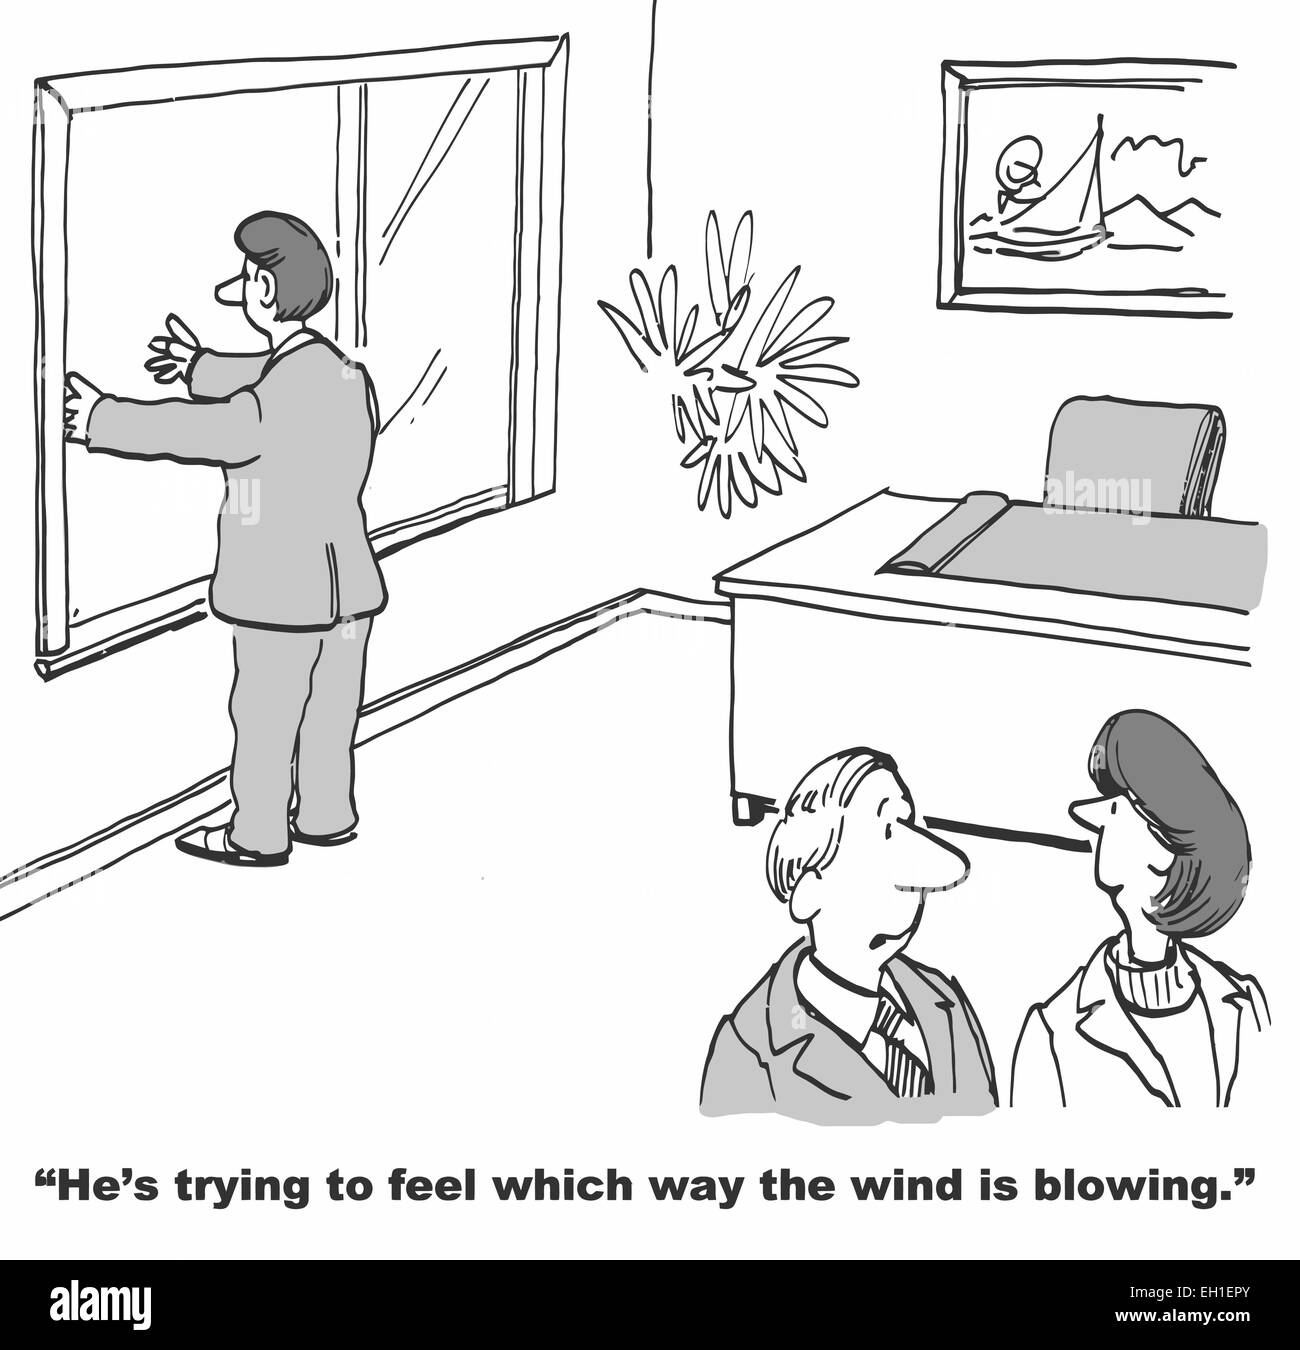 Karikatur von Geschäftsmann mit Waffen aus Fenster, Kollege sagt: er versucht zu fühlen, welche Richtung der Wind weht. Stock Vektor